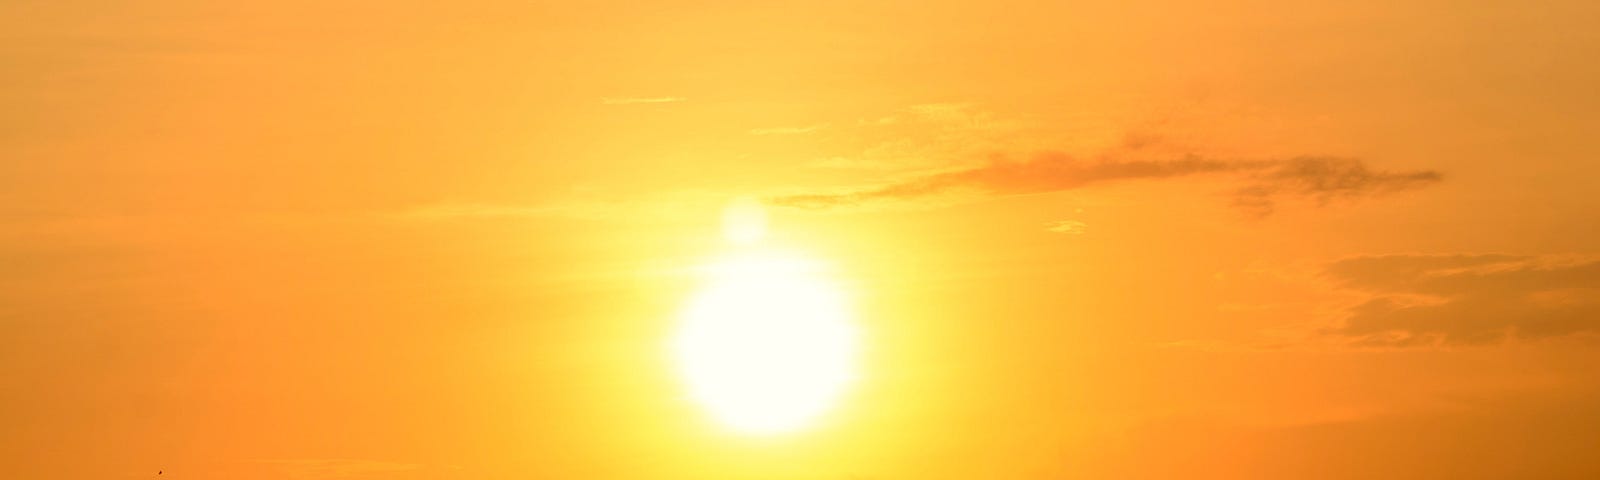 Photo of sun